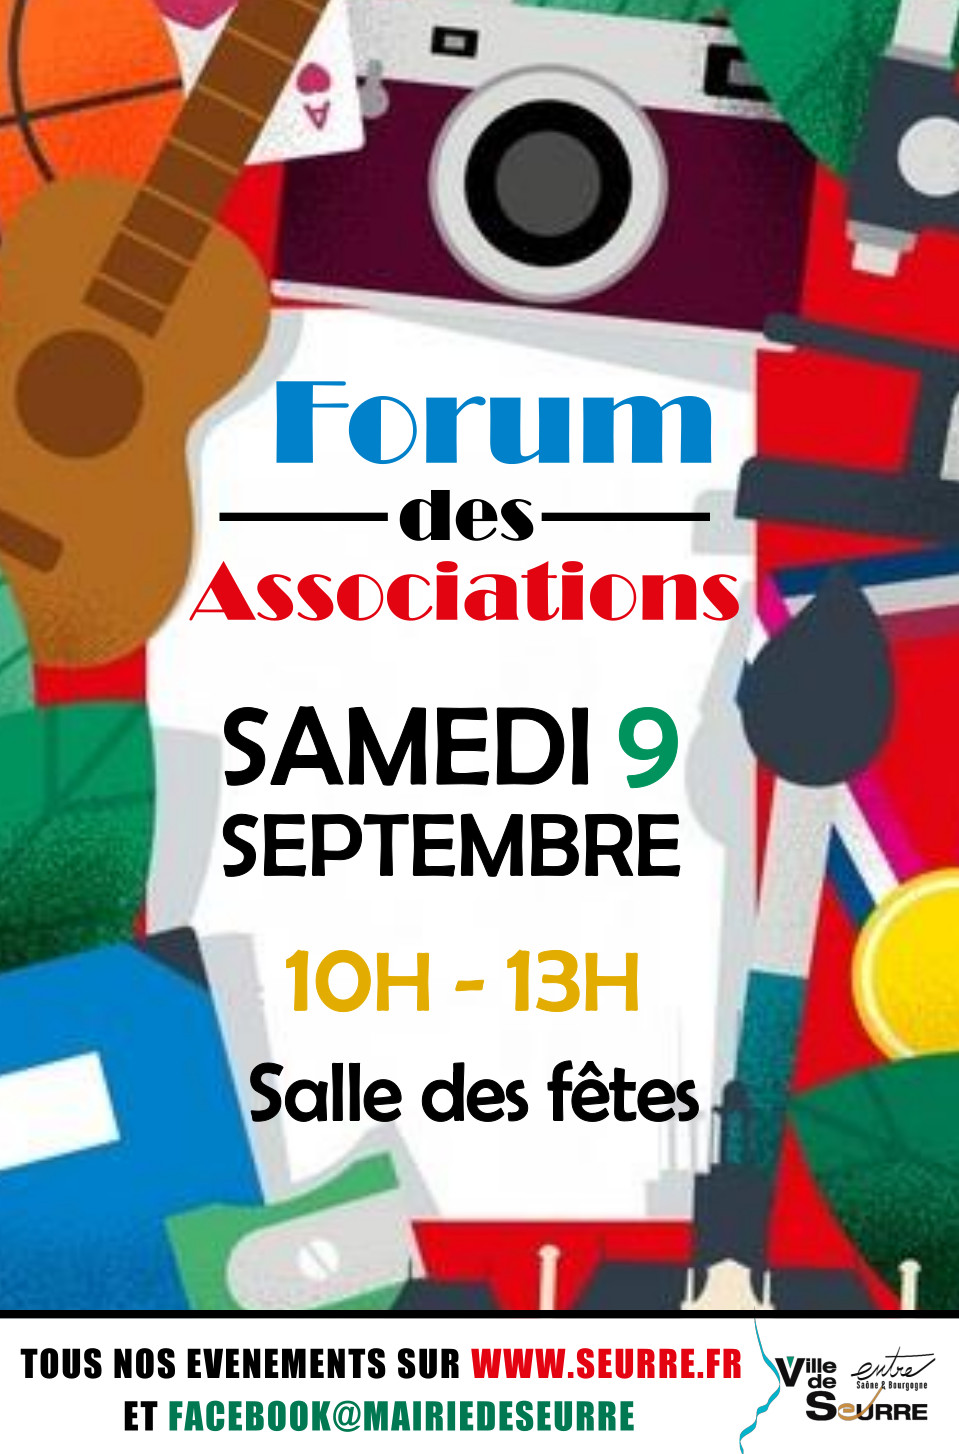 Forum des association - Samedi 9 septembre